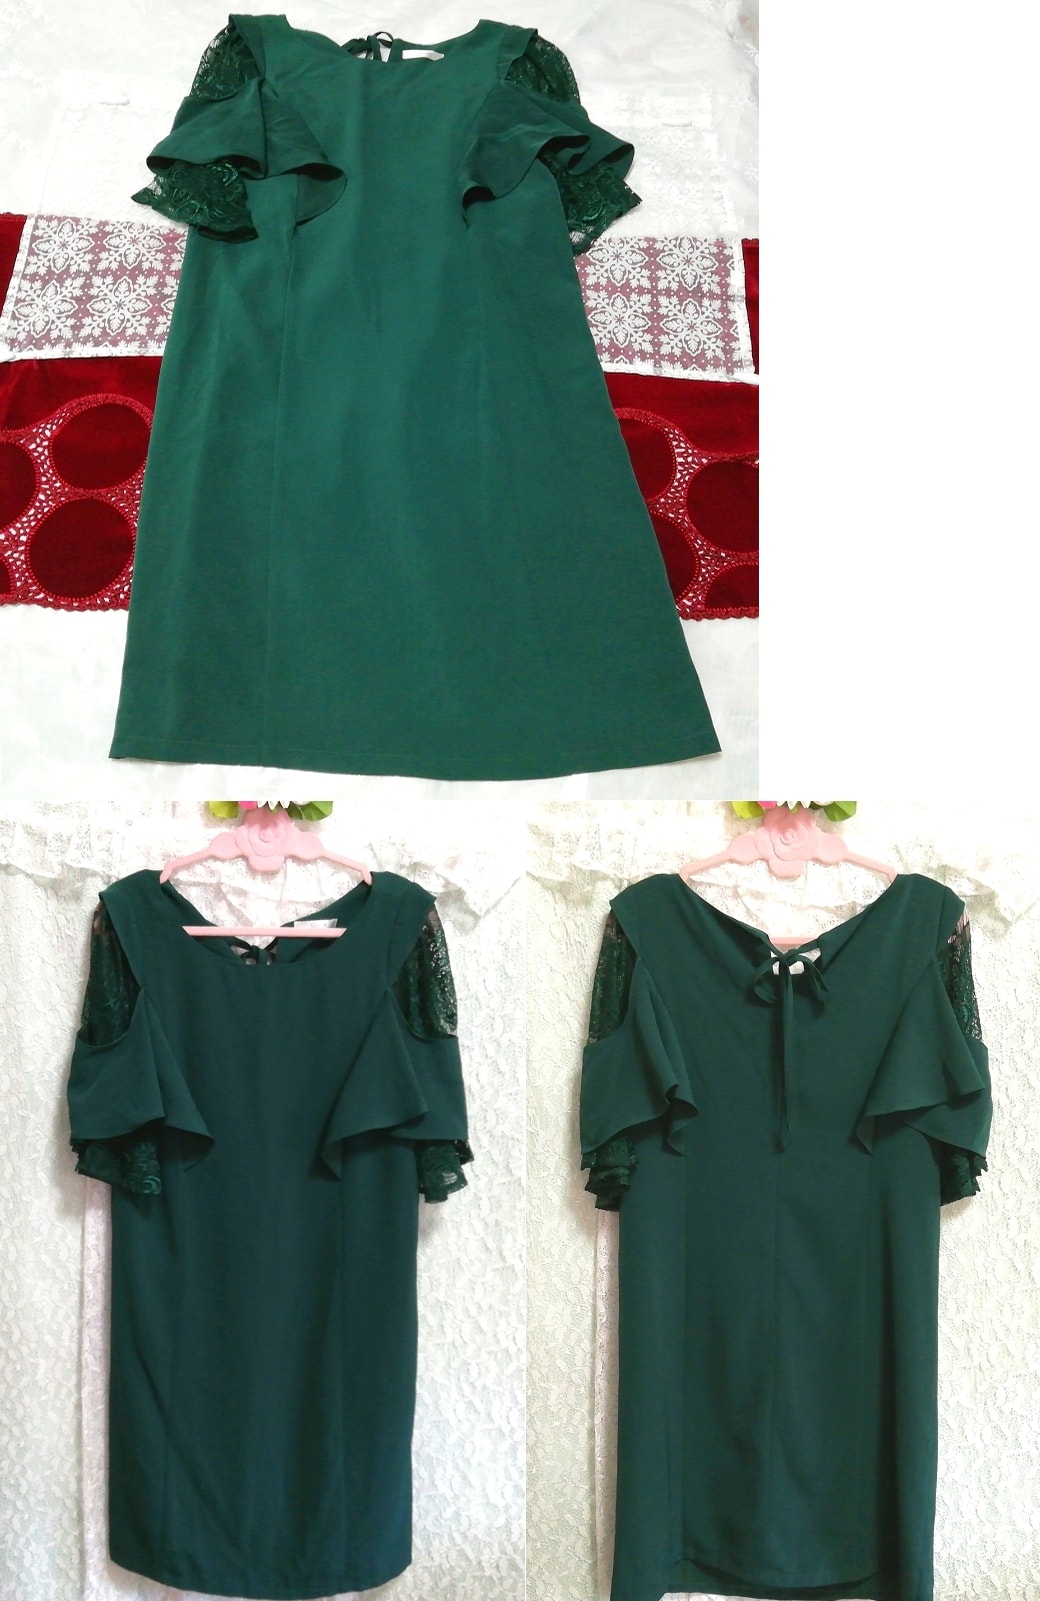 深绿色喇叭形睡衣短袖连衣裙, 时尚, 女士时装, 睡衣